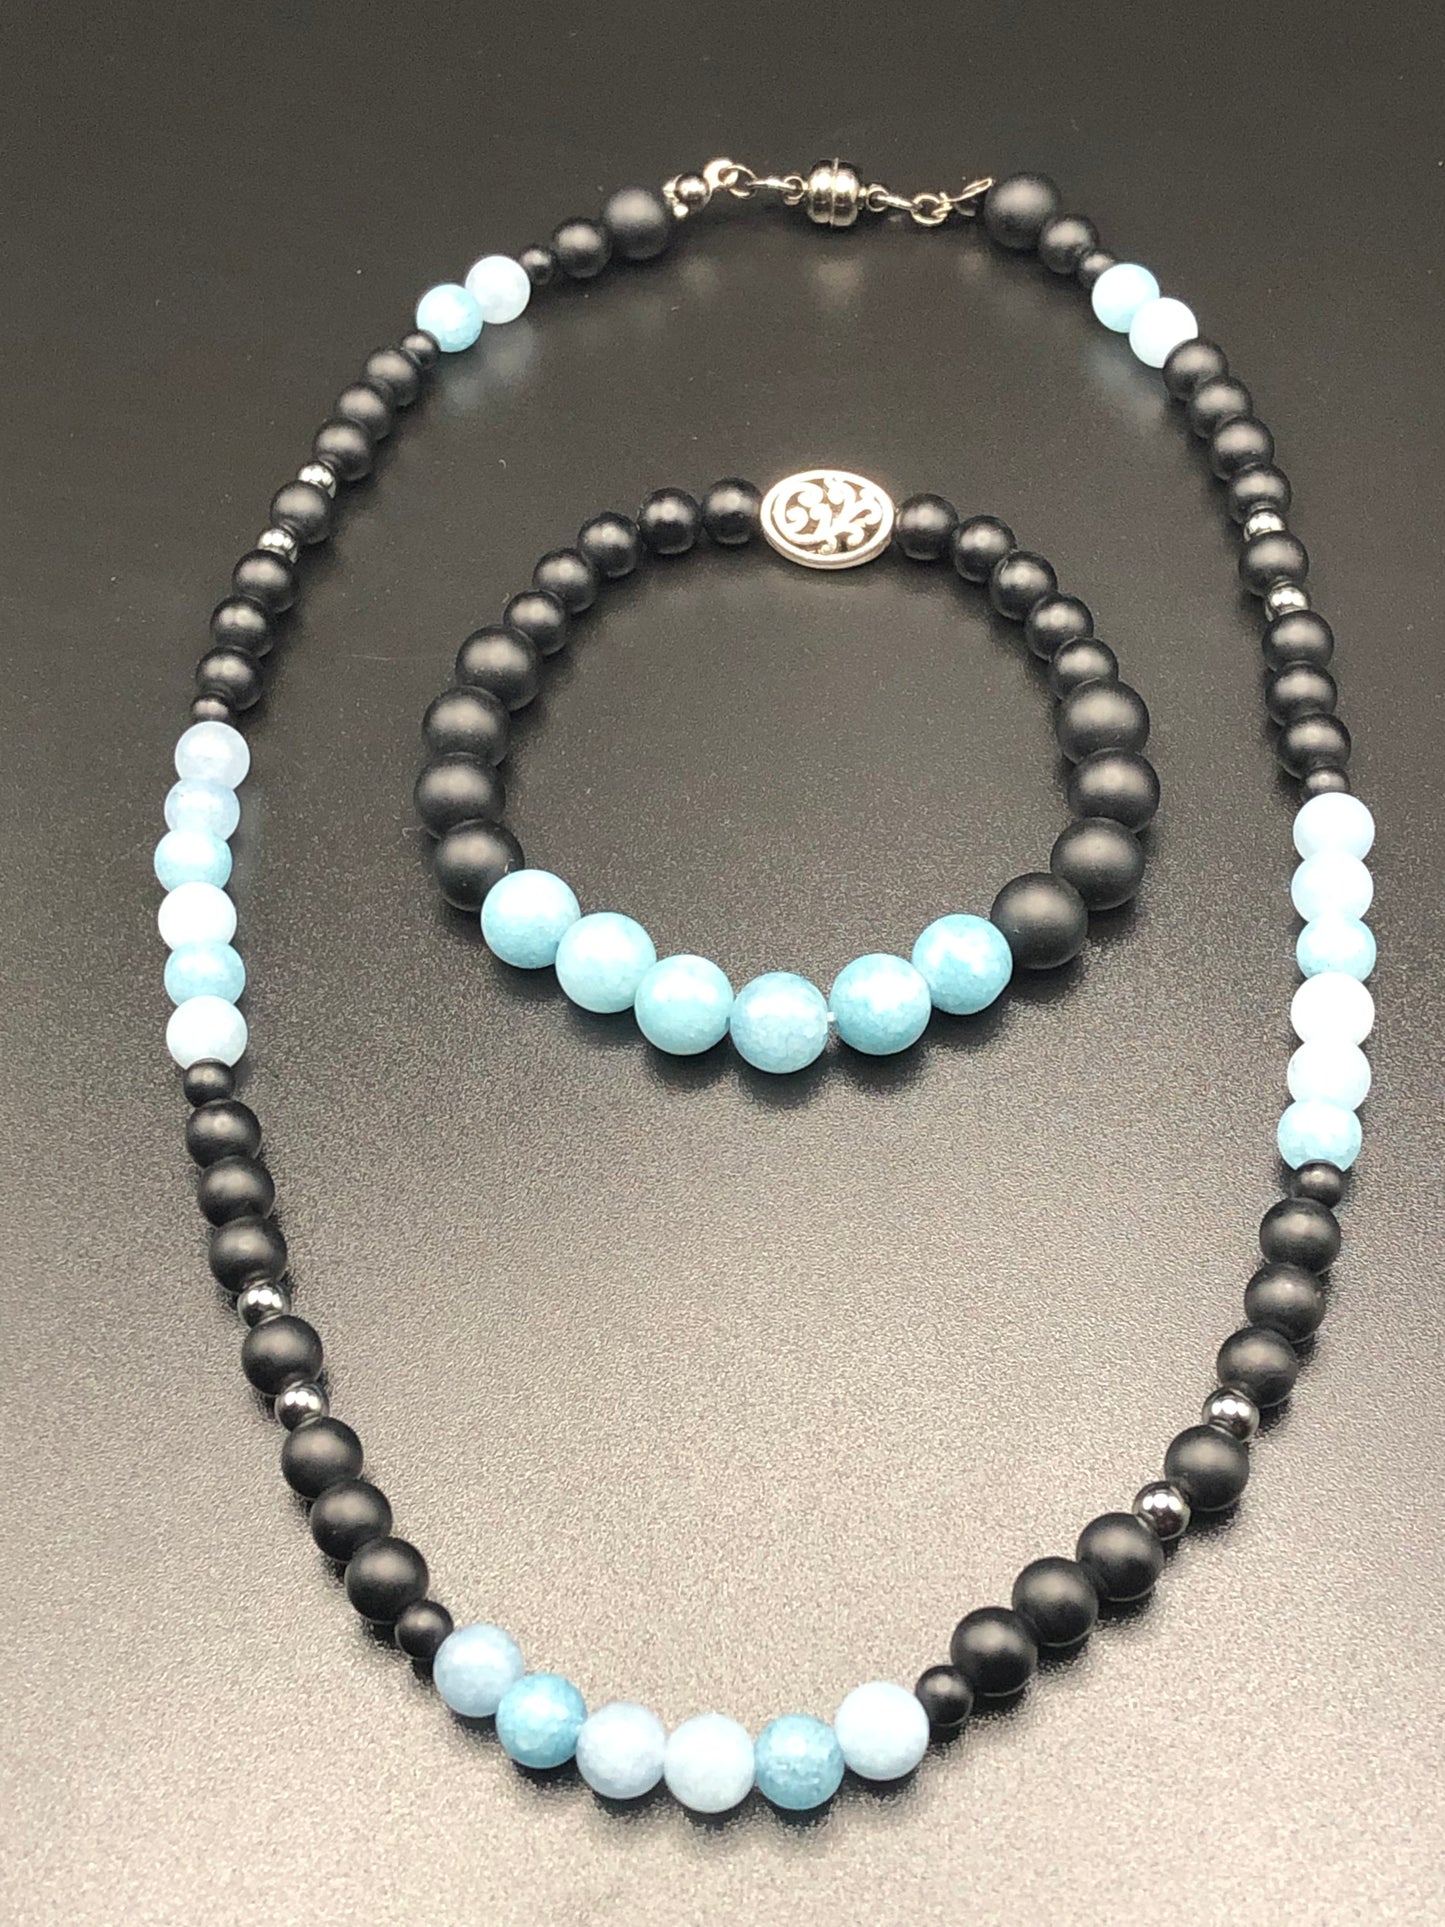 Blue Chalcedony x Onyx Necklace and Bracelet Set